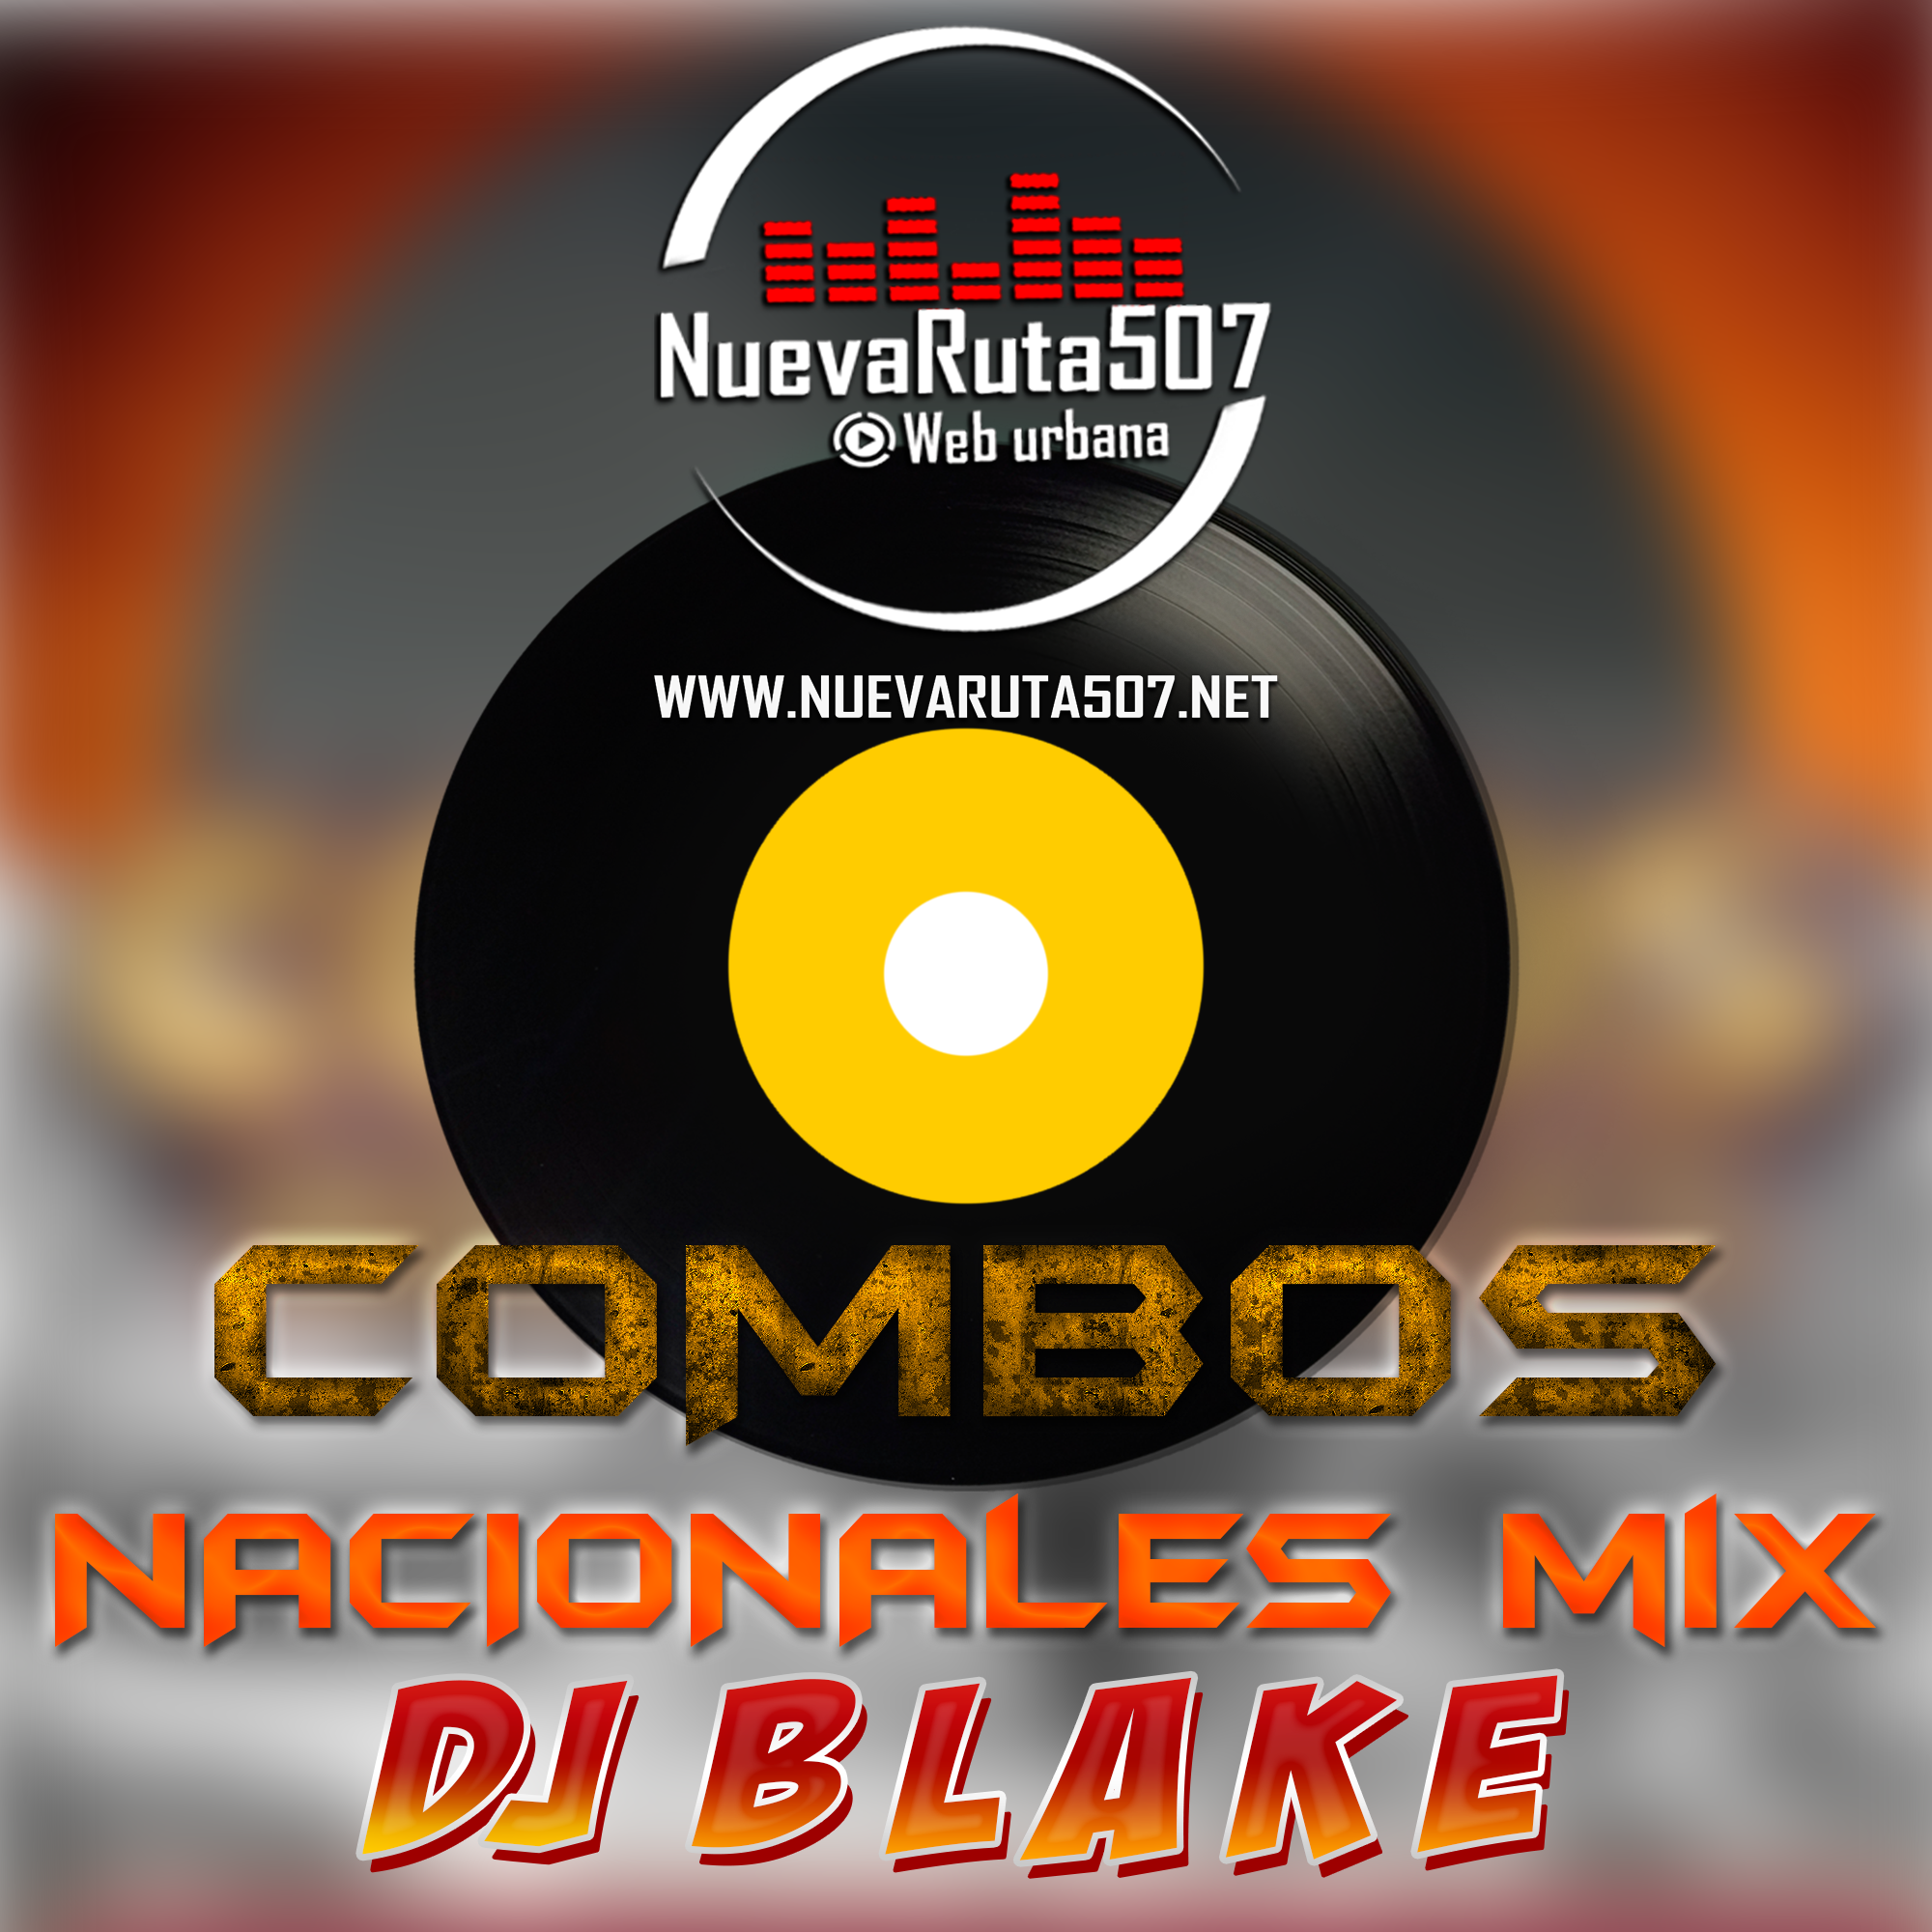 Dj Blake - Combos Nacionales Mix.mp3